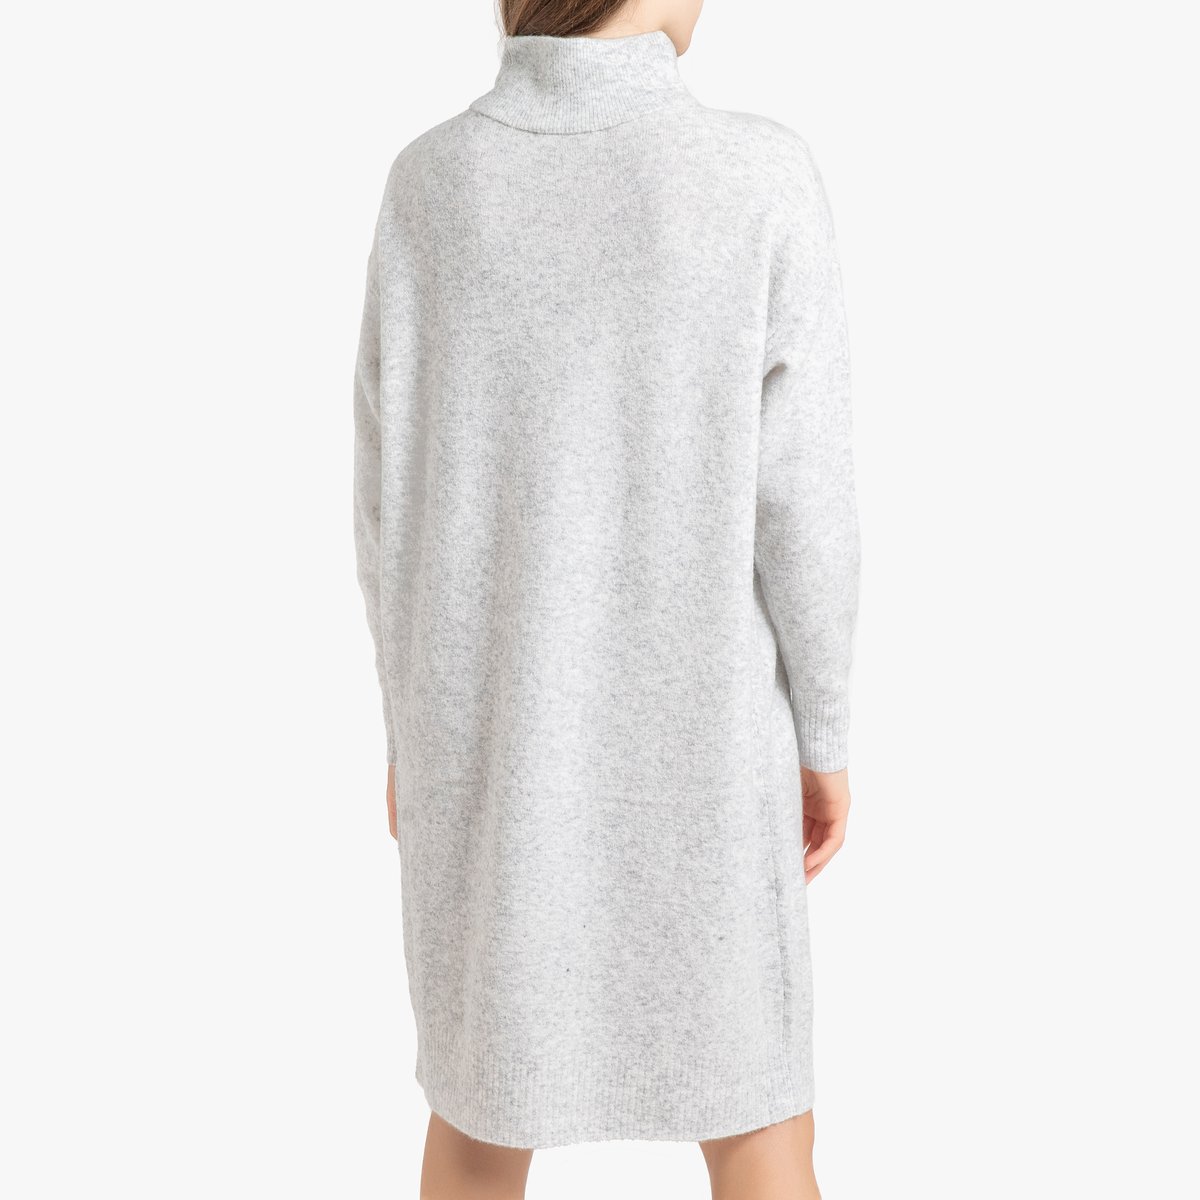 Платье-пуловер La Redoute Длинное с длинными рукавами DAMSVILLE XS/S серый, размер XS/S Длинное с длинными рукавами DAMSVILLE XS/S серый - фото 3